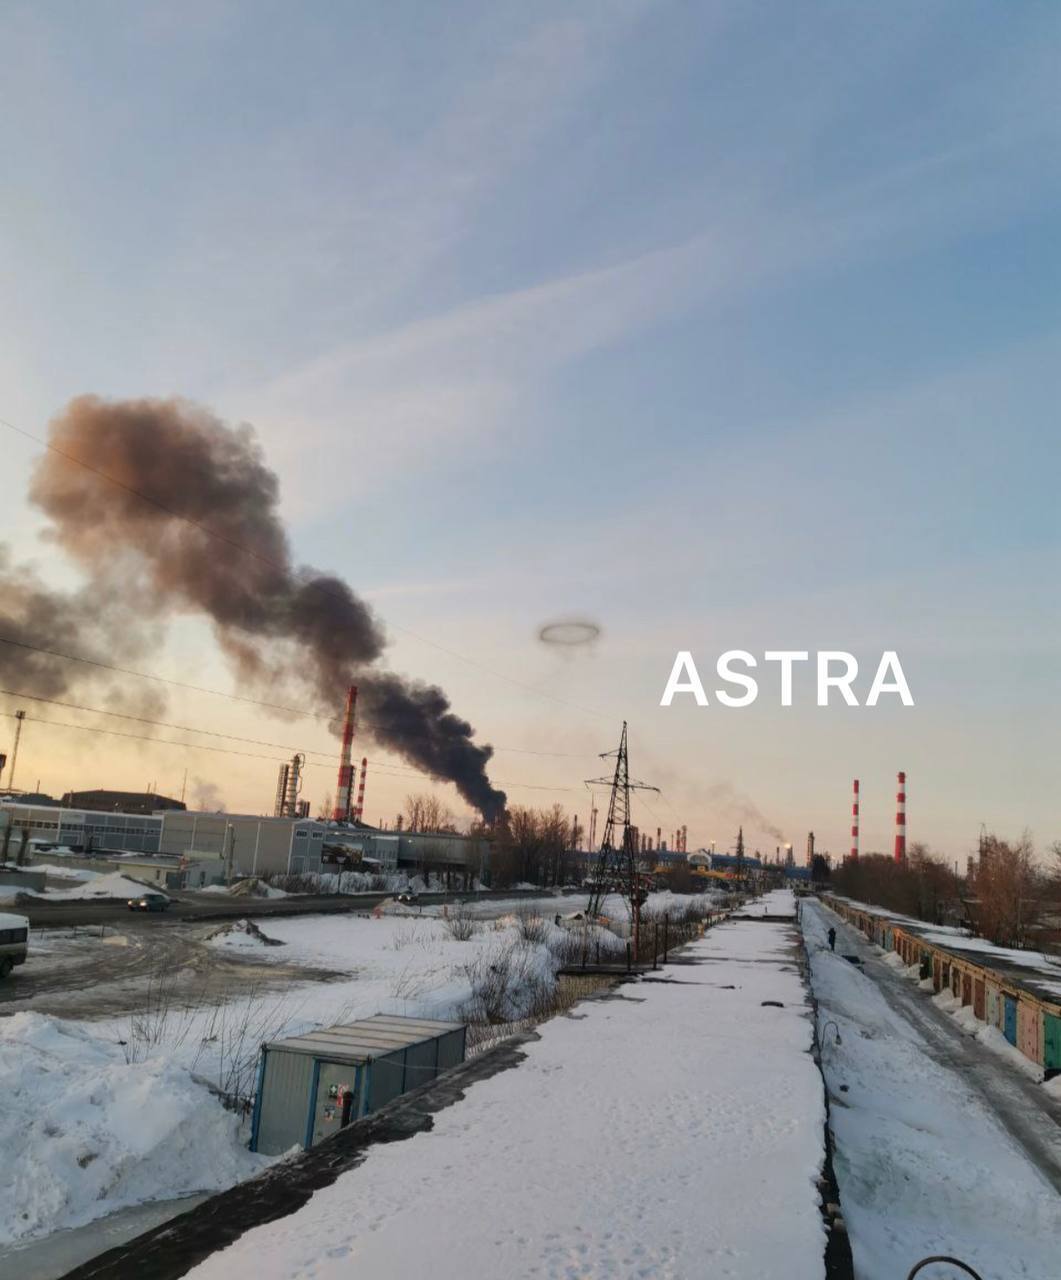 У російській Рязані поскаржилися на атаку дронів на нафтозавод, валить чорний дим. Фото і відео